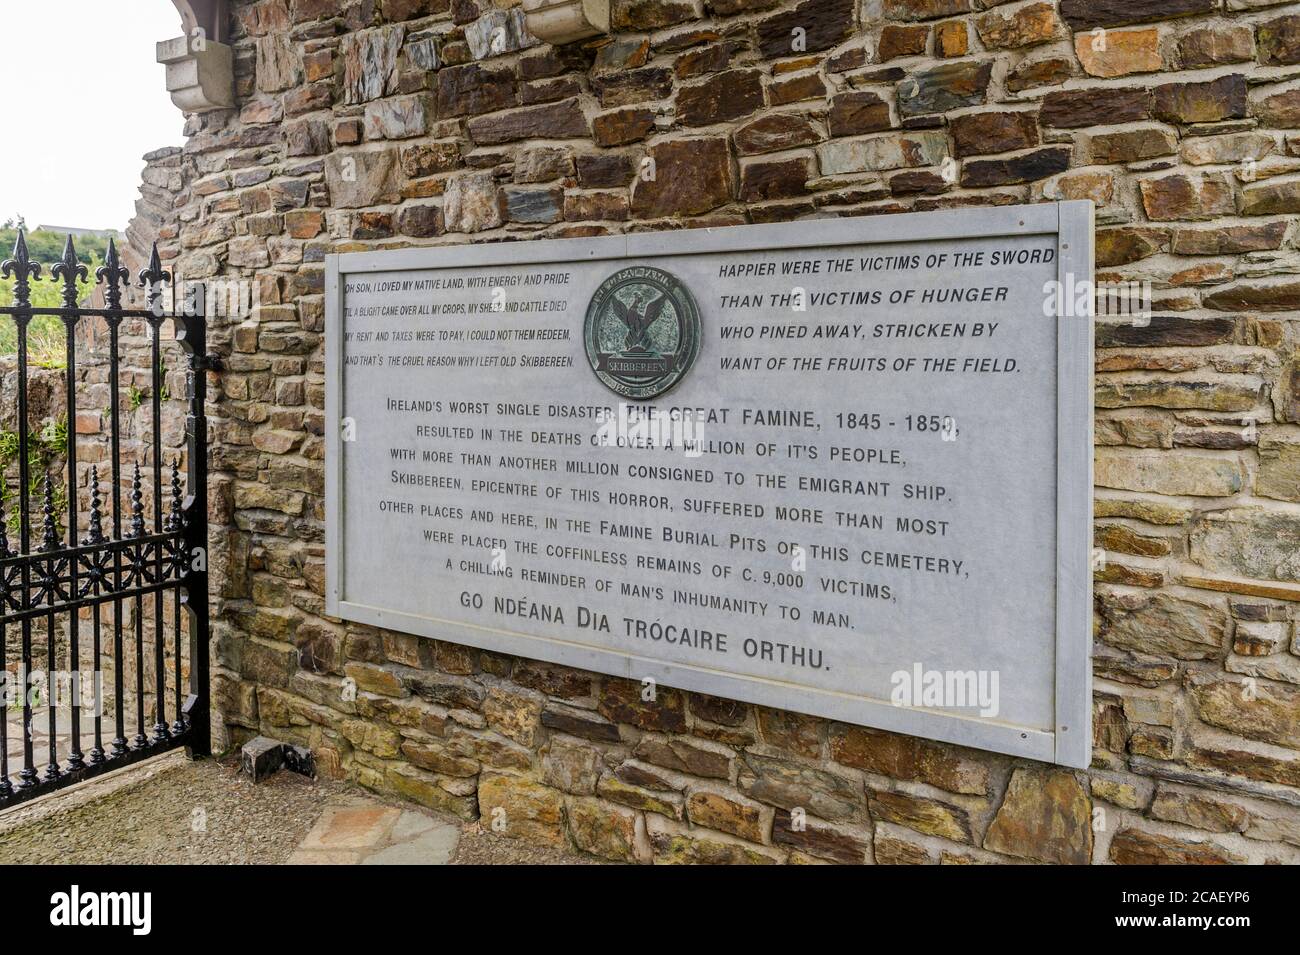 Cimitero di Abbeystrowry a Skibbereen, Irlanda, dove sono sepolte 8-10.000 vittime della carestia irlandese delle patate del 1845-1850. Foto Stock